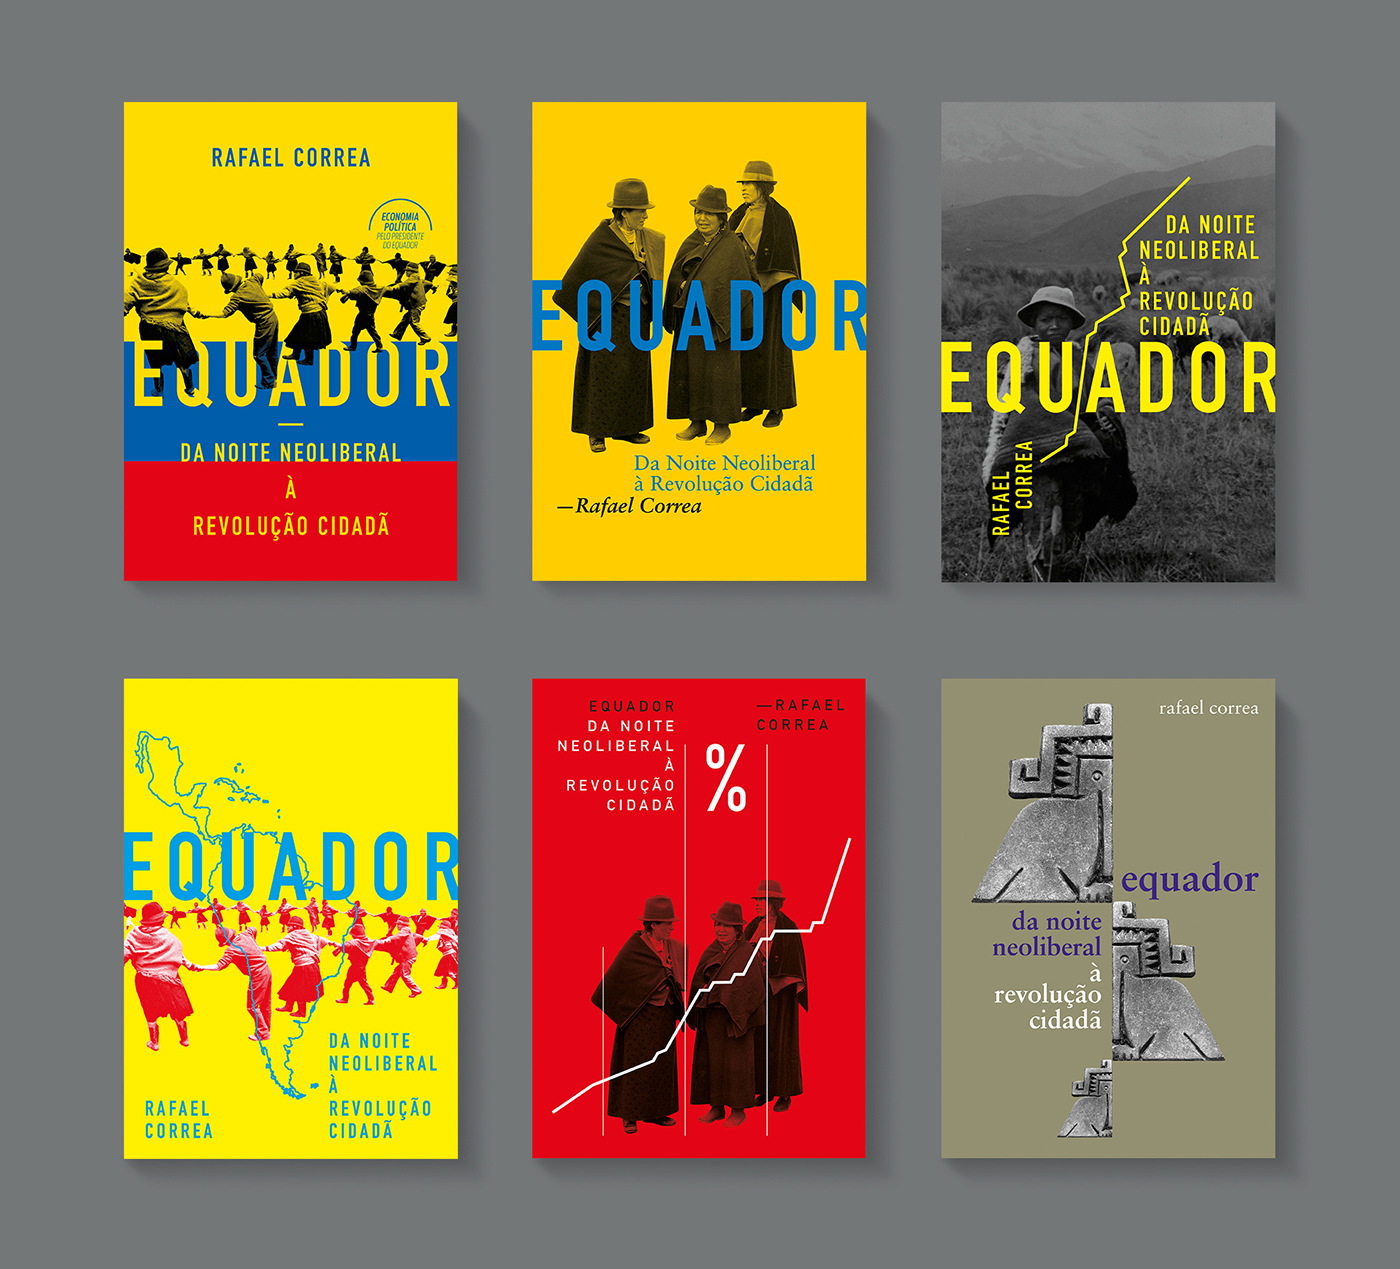 cover book equador rafael correa  Ecuador boitempo